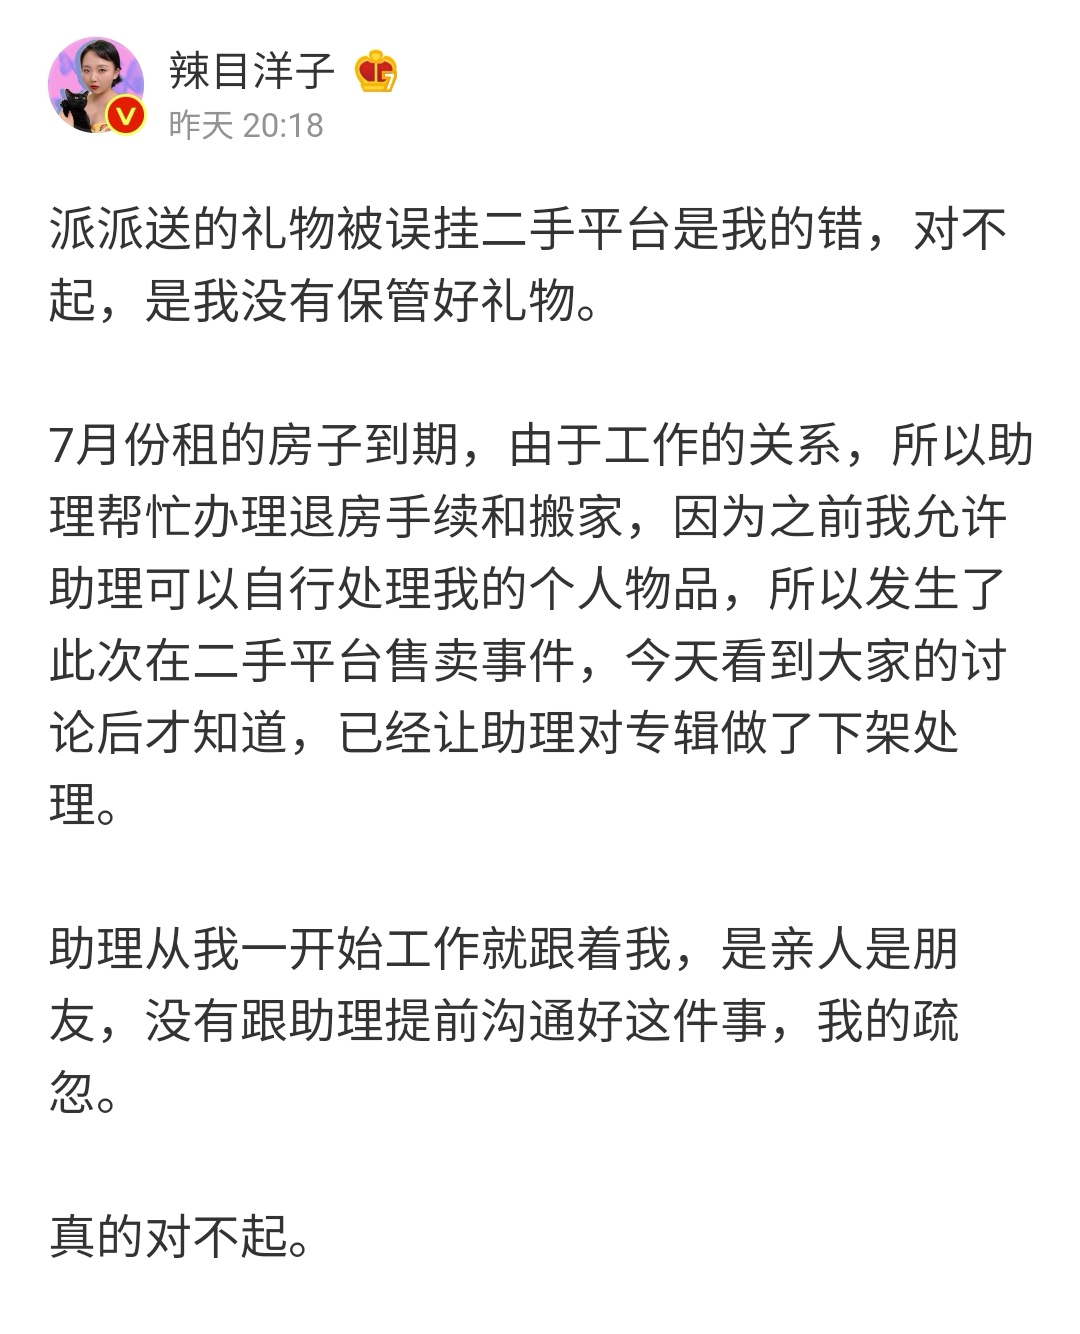 ข้อความใน weibo ของ ล่ามู่หยางจื่อ